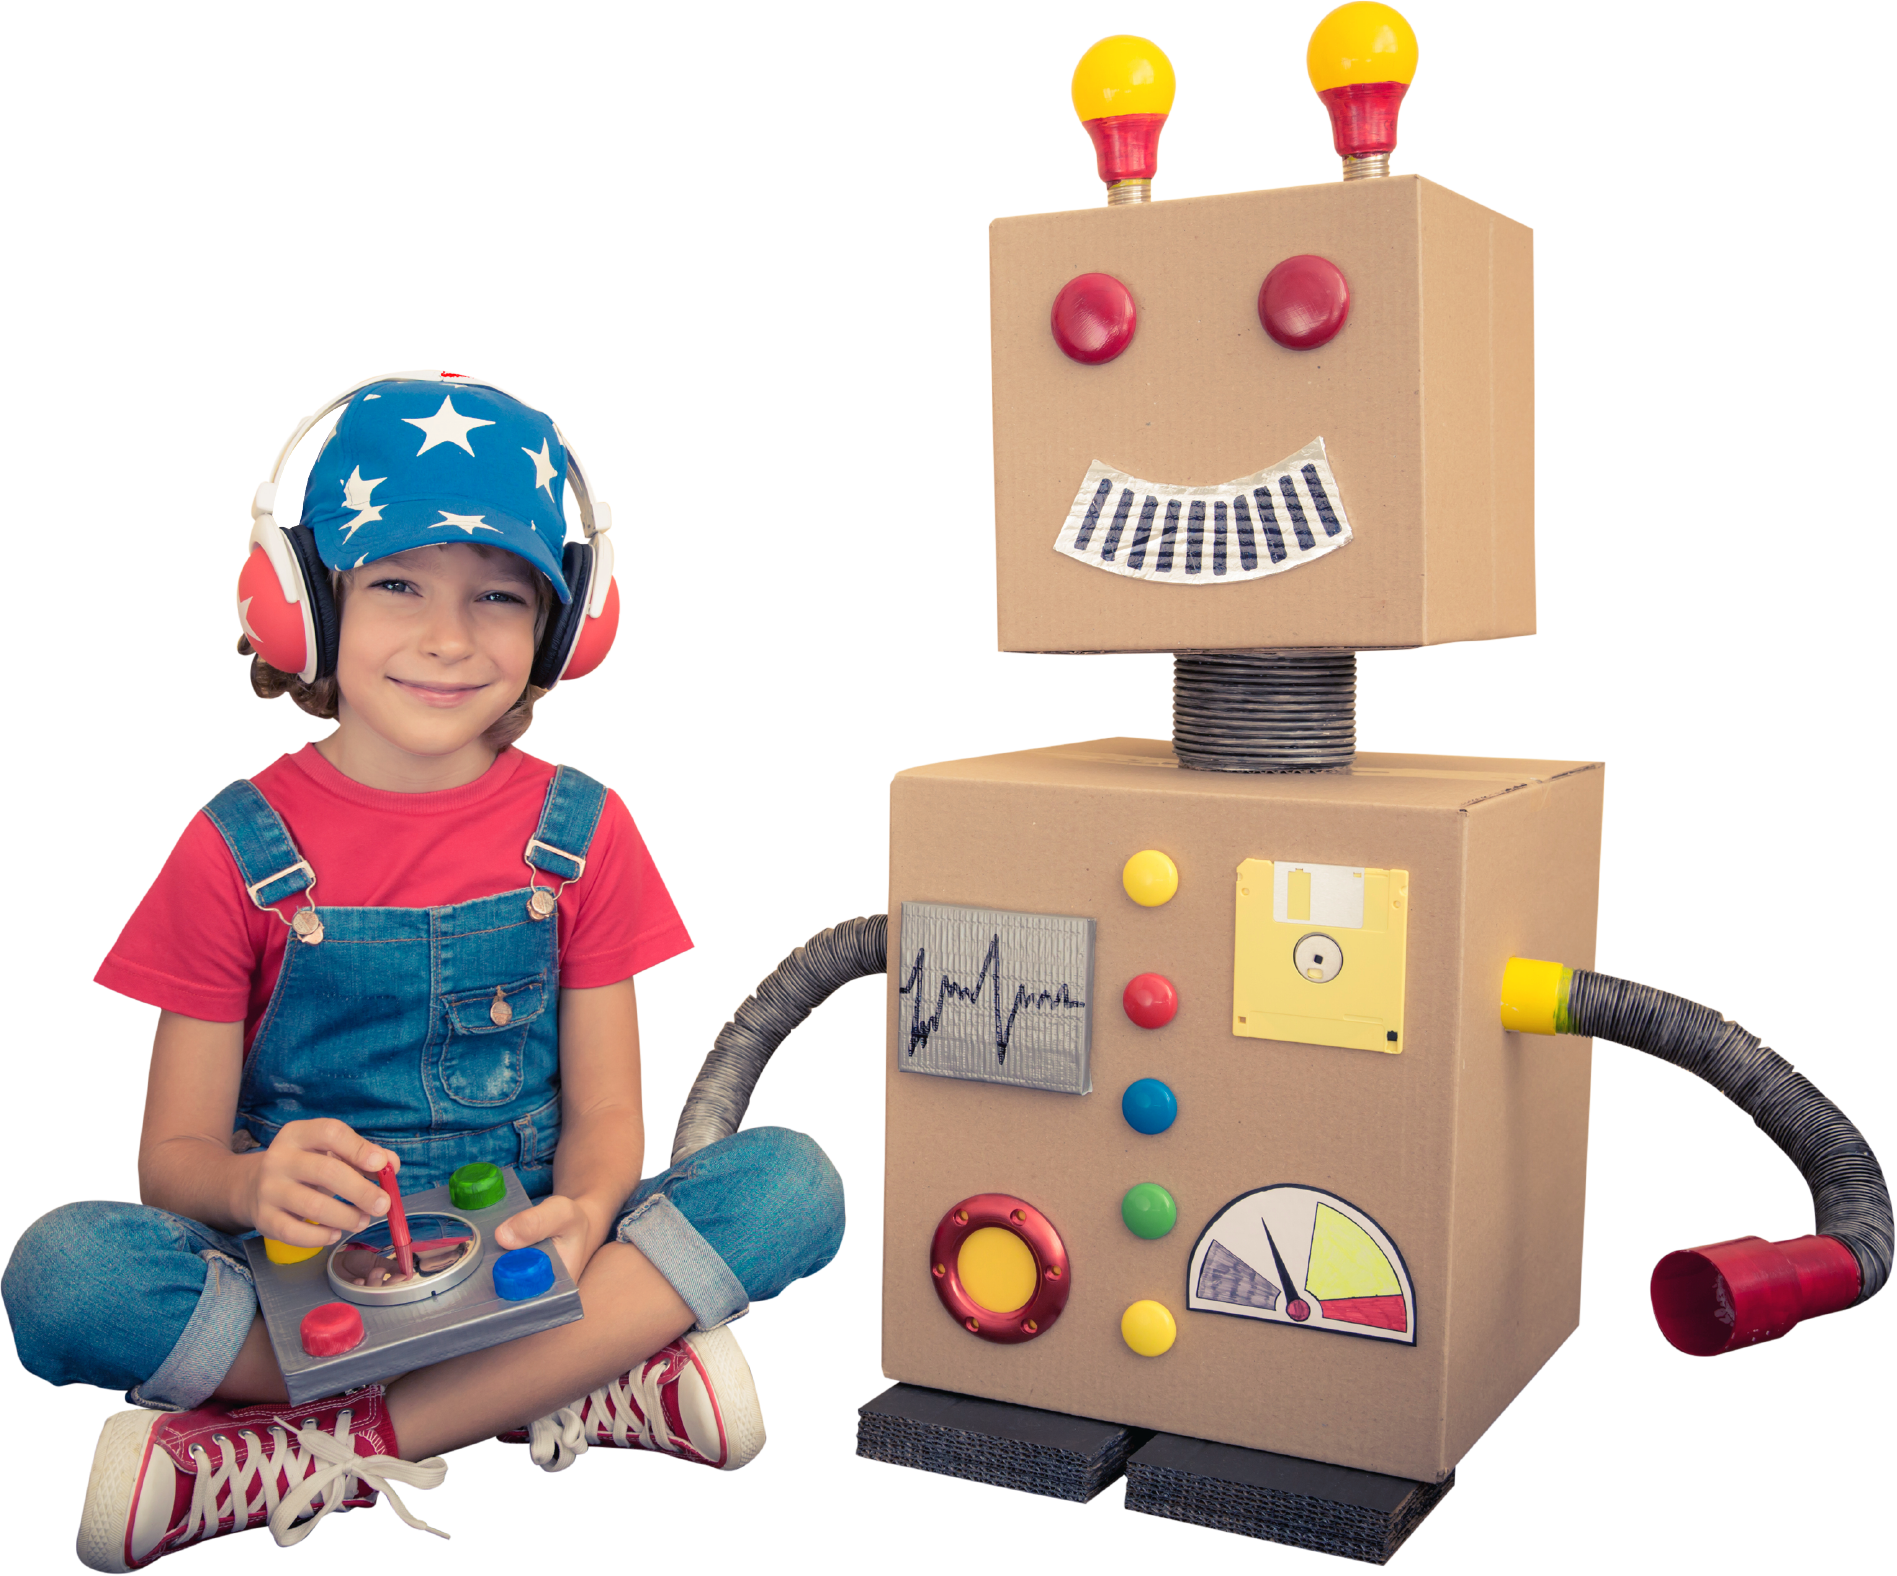 Child Building a Robot